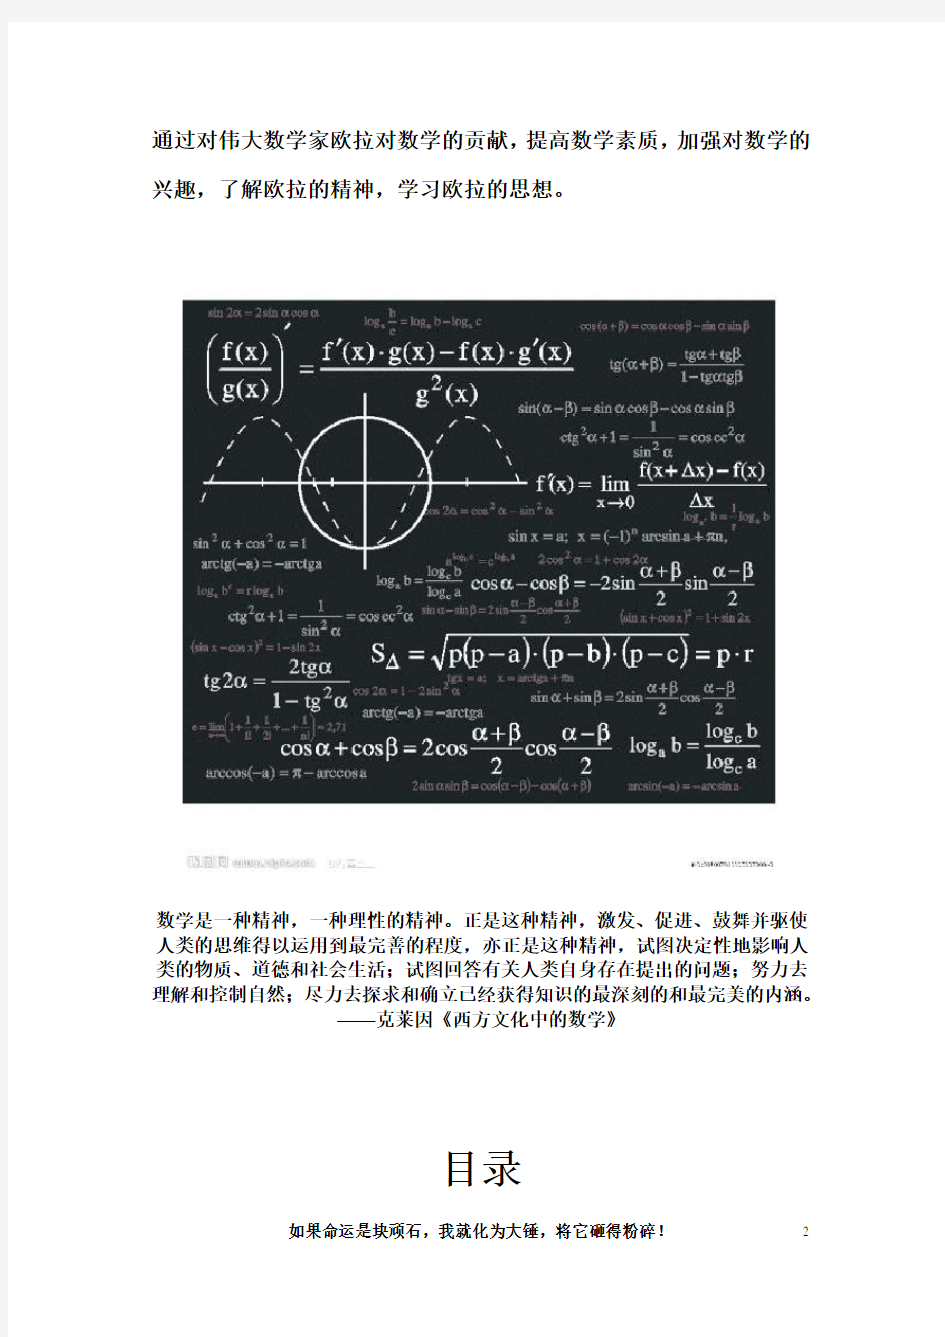 伟大数学家欧拉对数学的贡献 - 副本